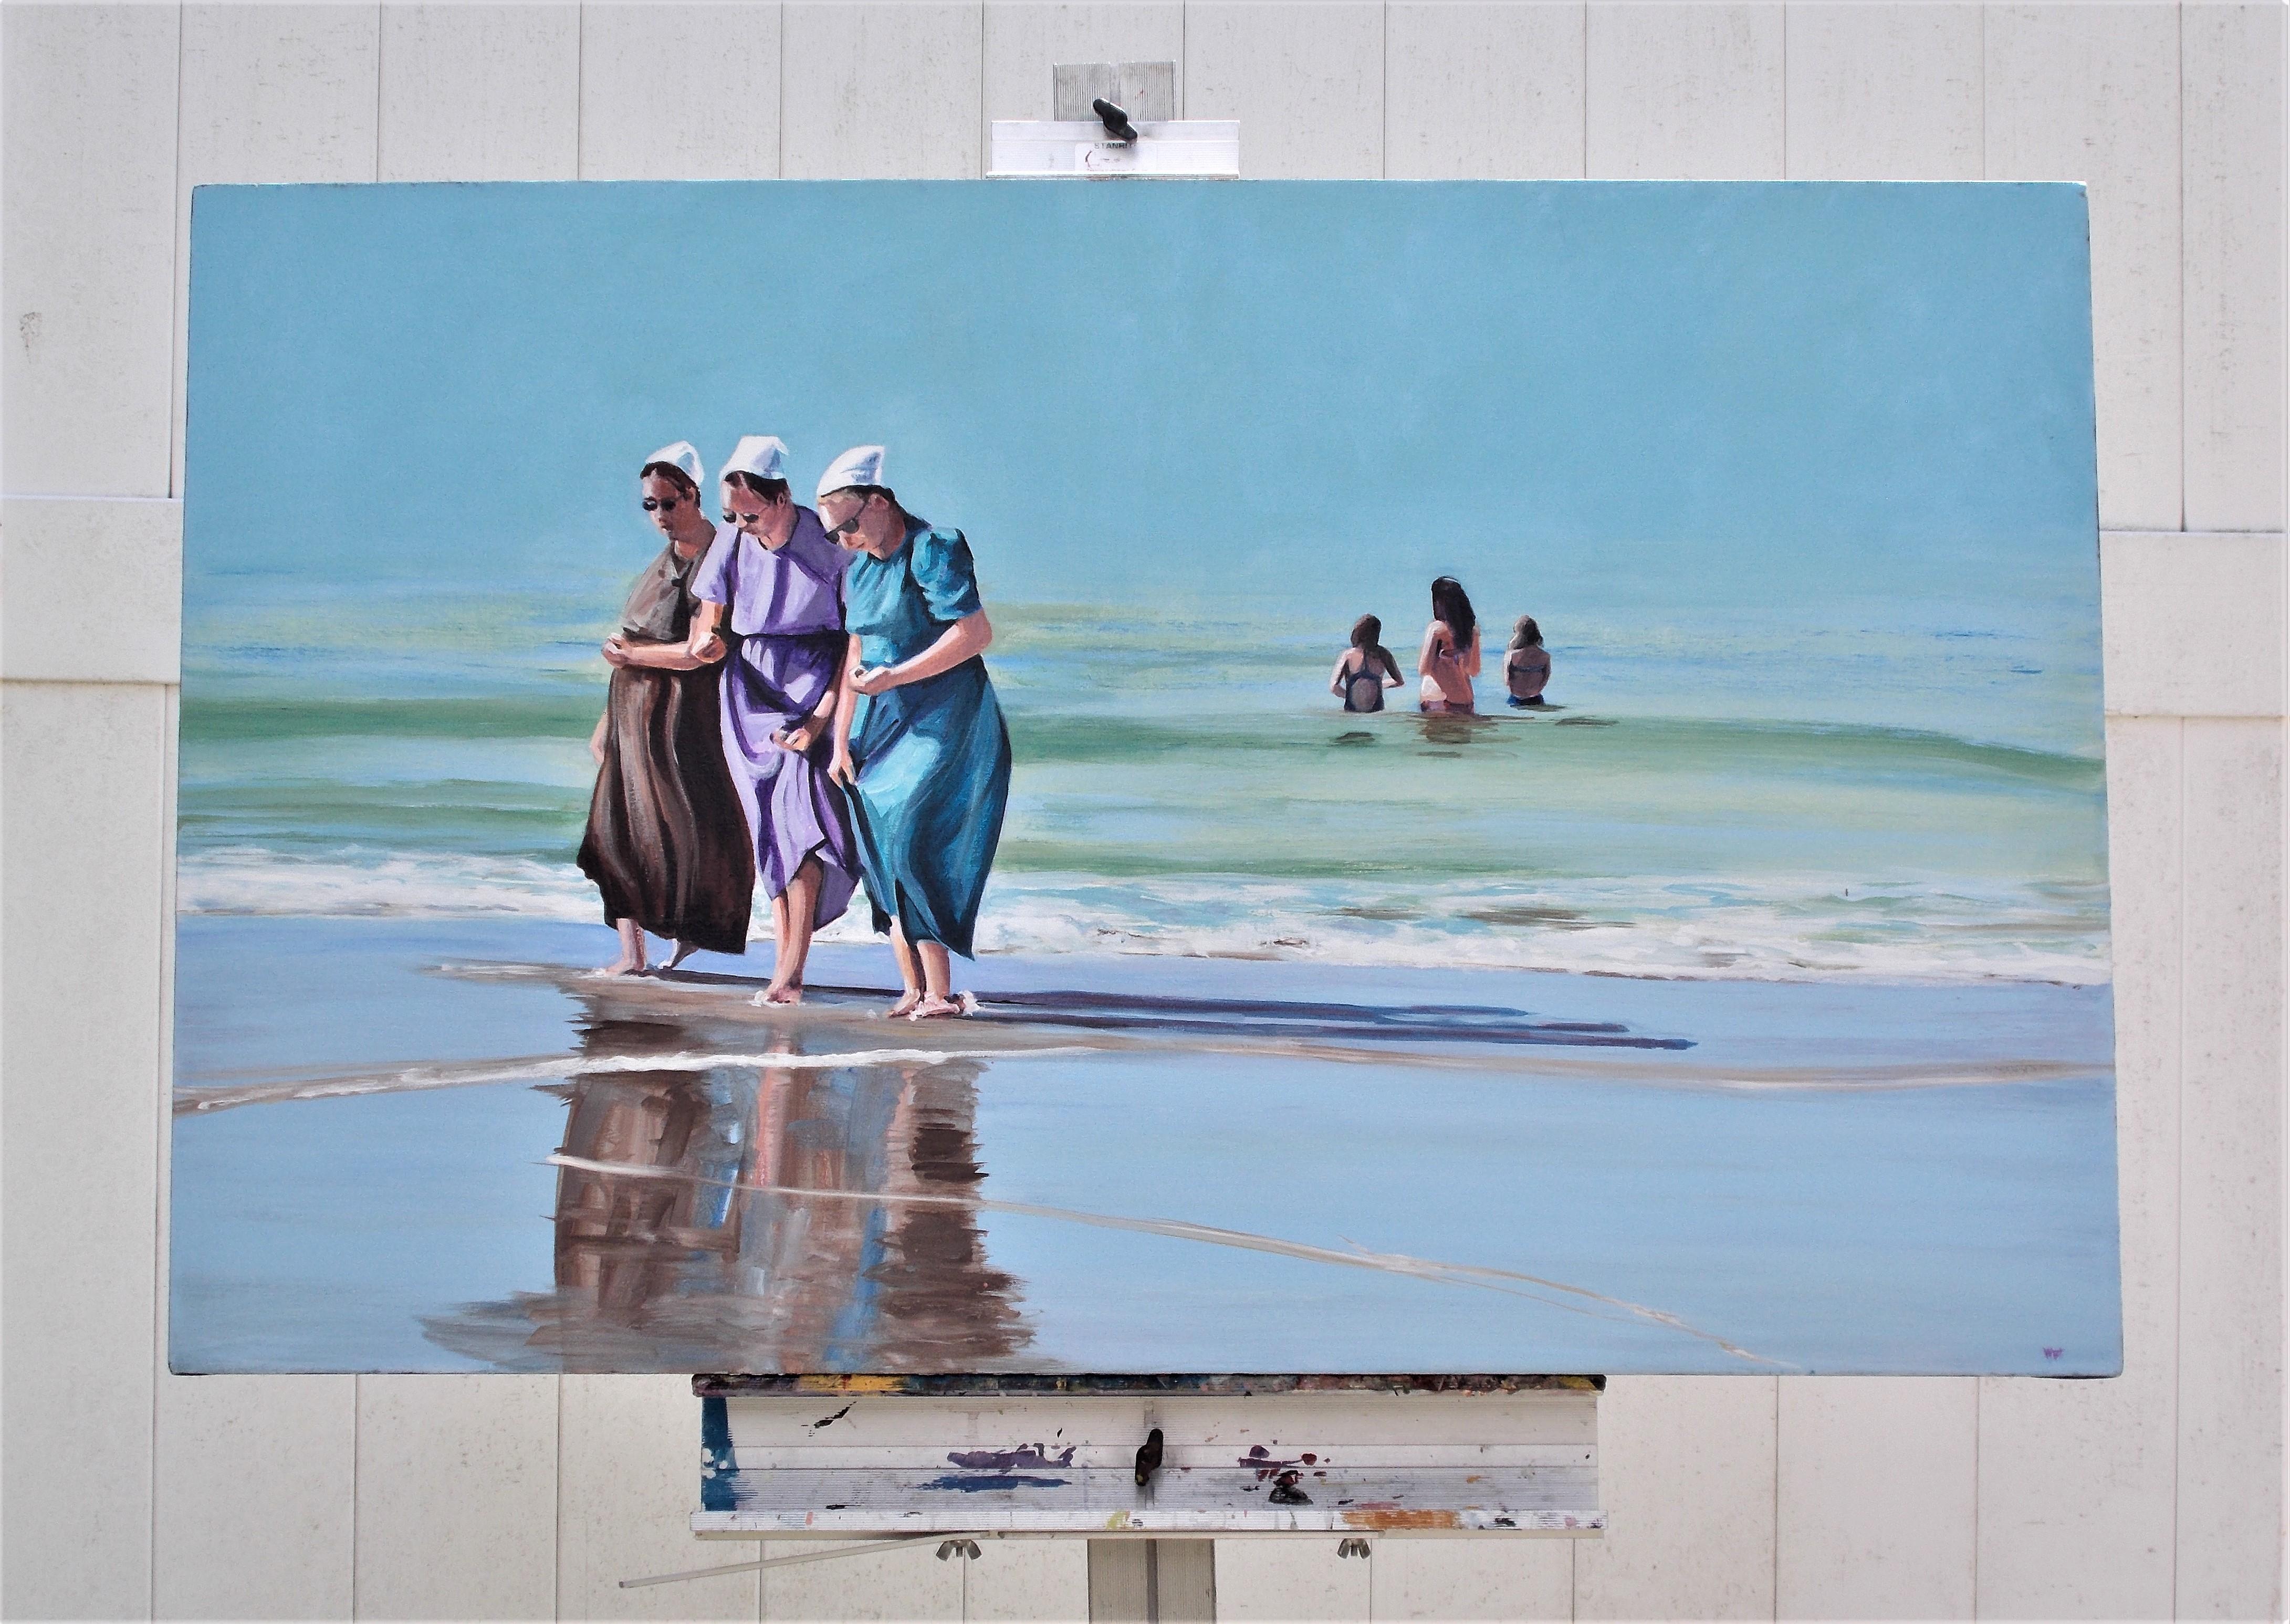 <p>Commentaires de l'artiste<br>L'artiste Benjamin Thomas montre une plage ensoleillée avec des vagues qui s'écrasent doucement sur le sable sombre. Trois sœurs Amish profitent d'une promenade sur l'eau qui se retire, pieds nus. Plus loin dans